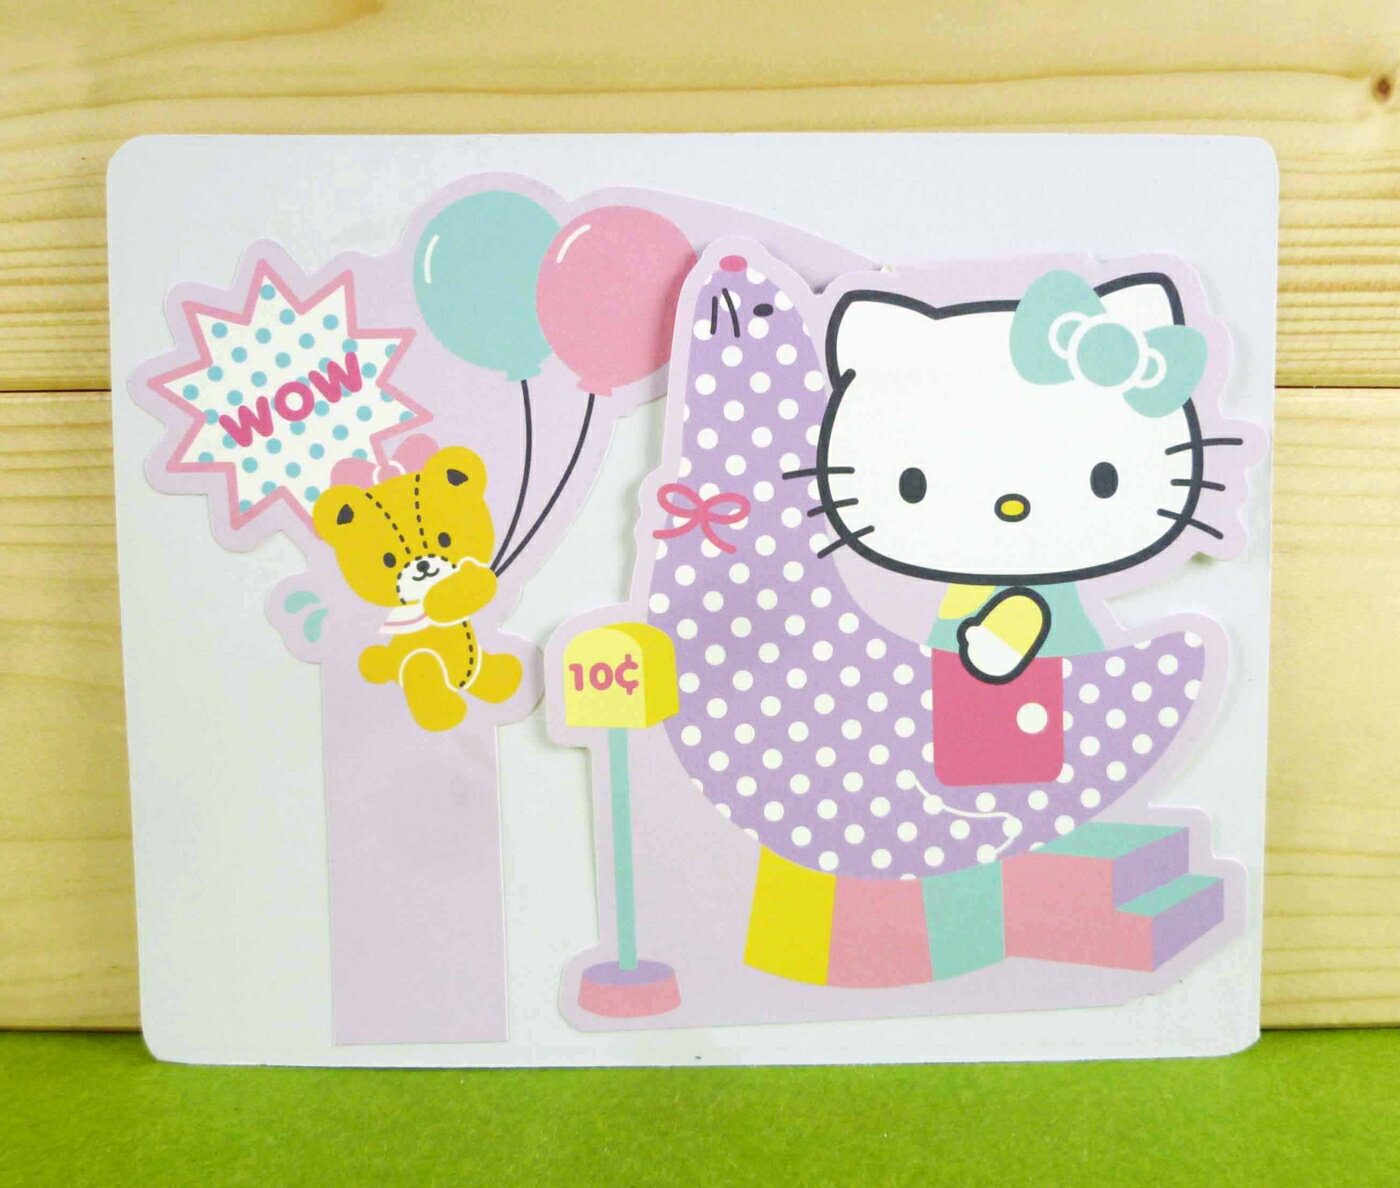 【震撼精品百貨】Hello Kitty 凱蒂貓 卡片-氣球(M) 震撼日式精品百貨